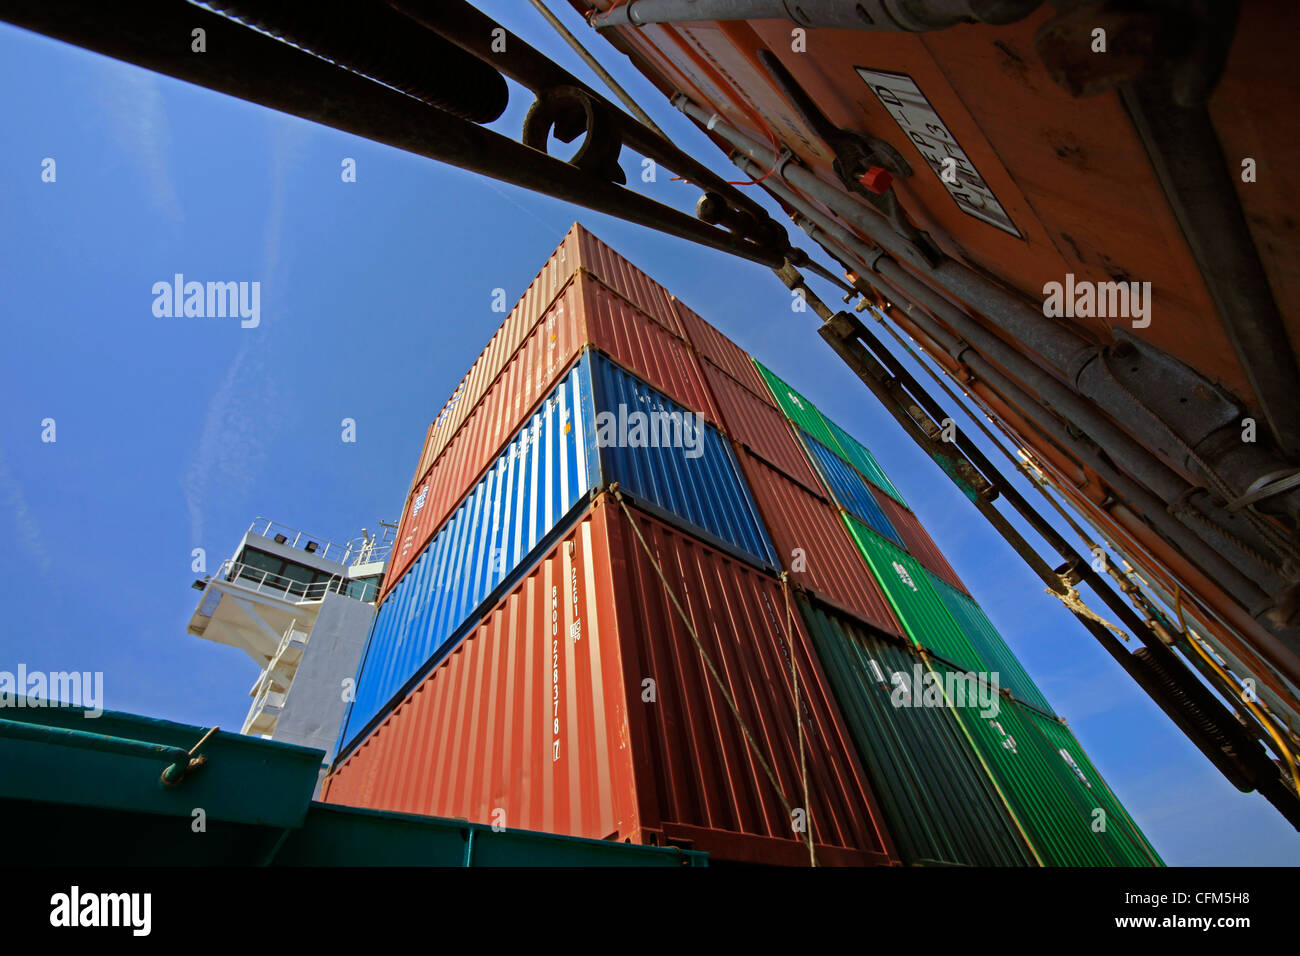 Container ship, Baltic Sea, Sweden, Scandinavia, Europe Stock Photo